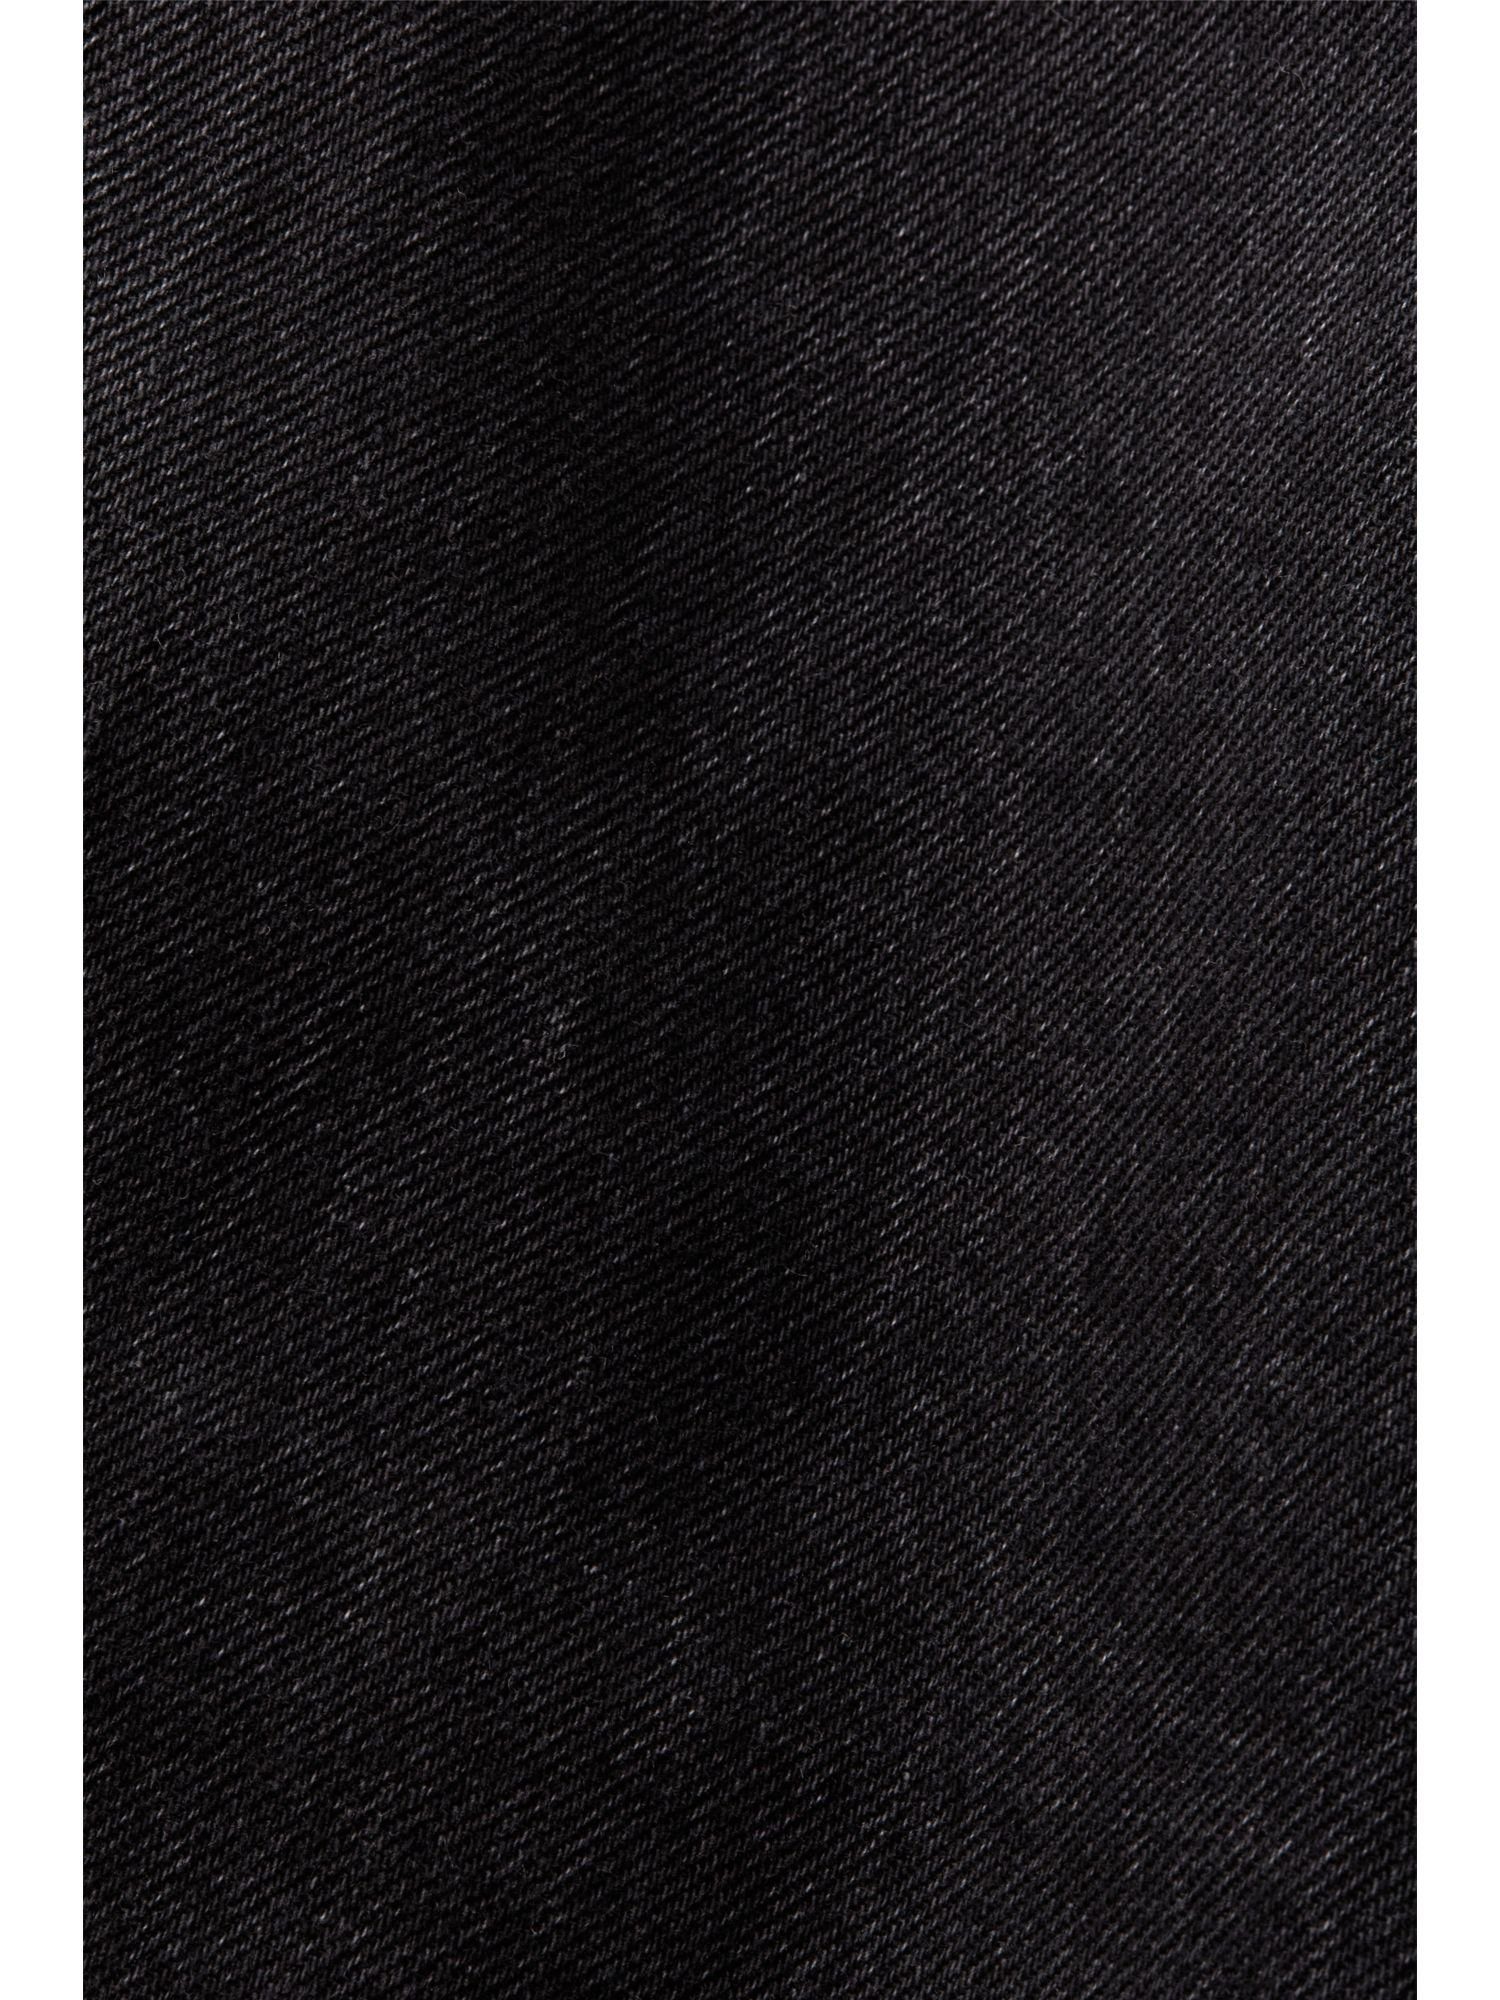 Esprit Jeansrock Jeans-Minirock mit asymmetrischem Bund